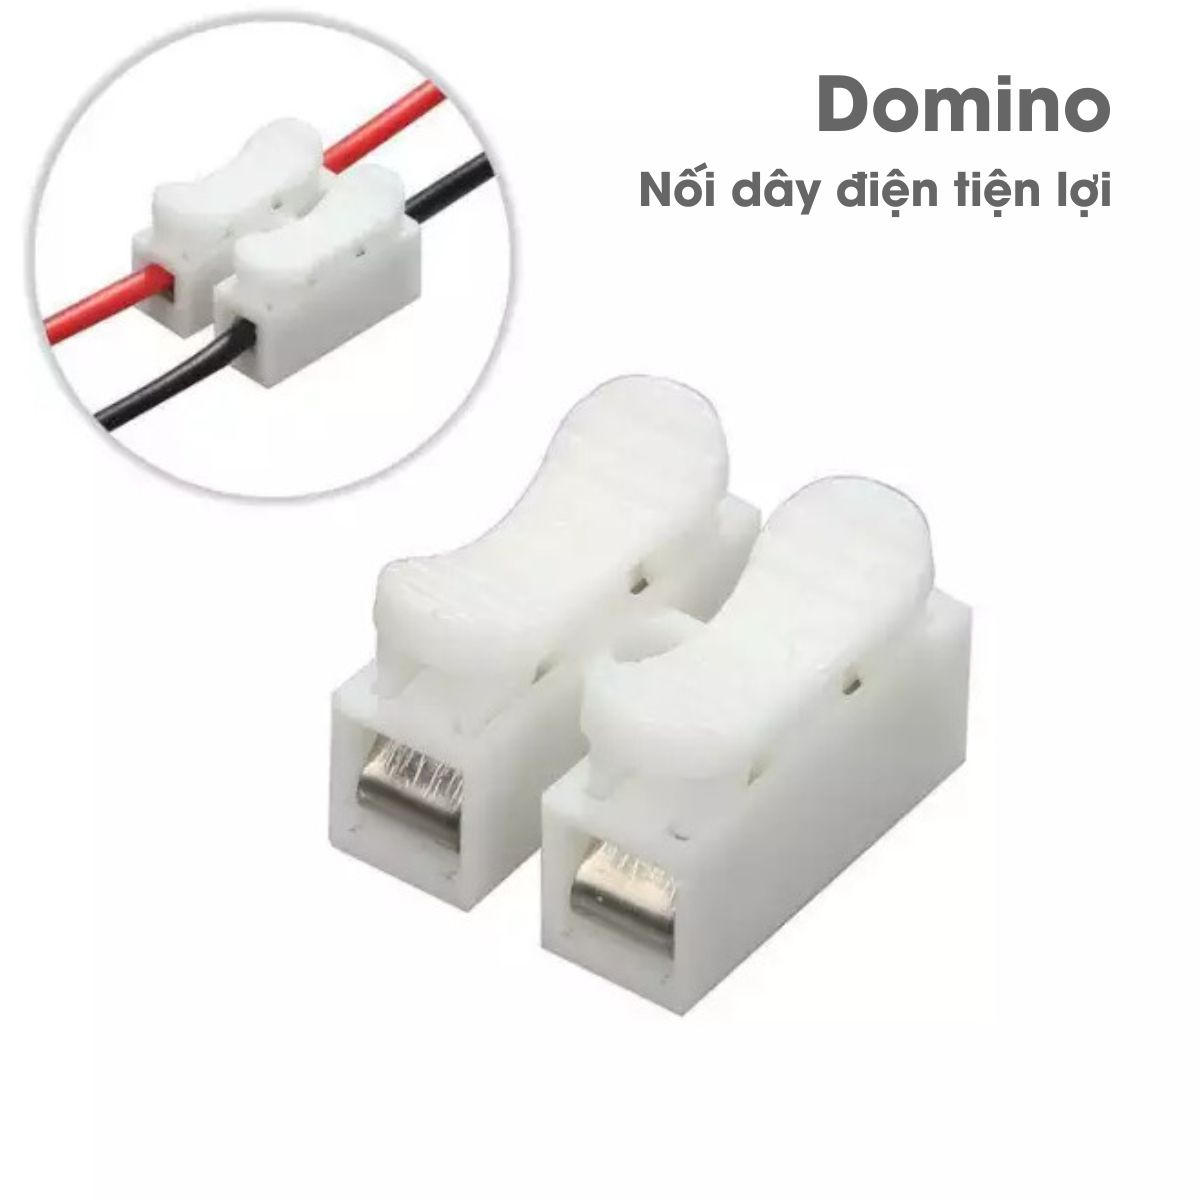 Domino cút nối dây điện tiện lợi - CH-2 [Đấu nối dây điện siêu nhanh]